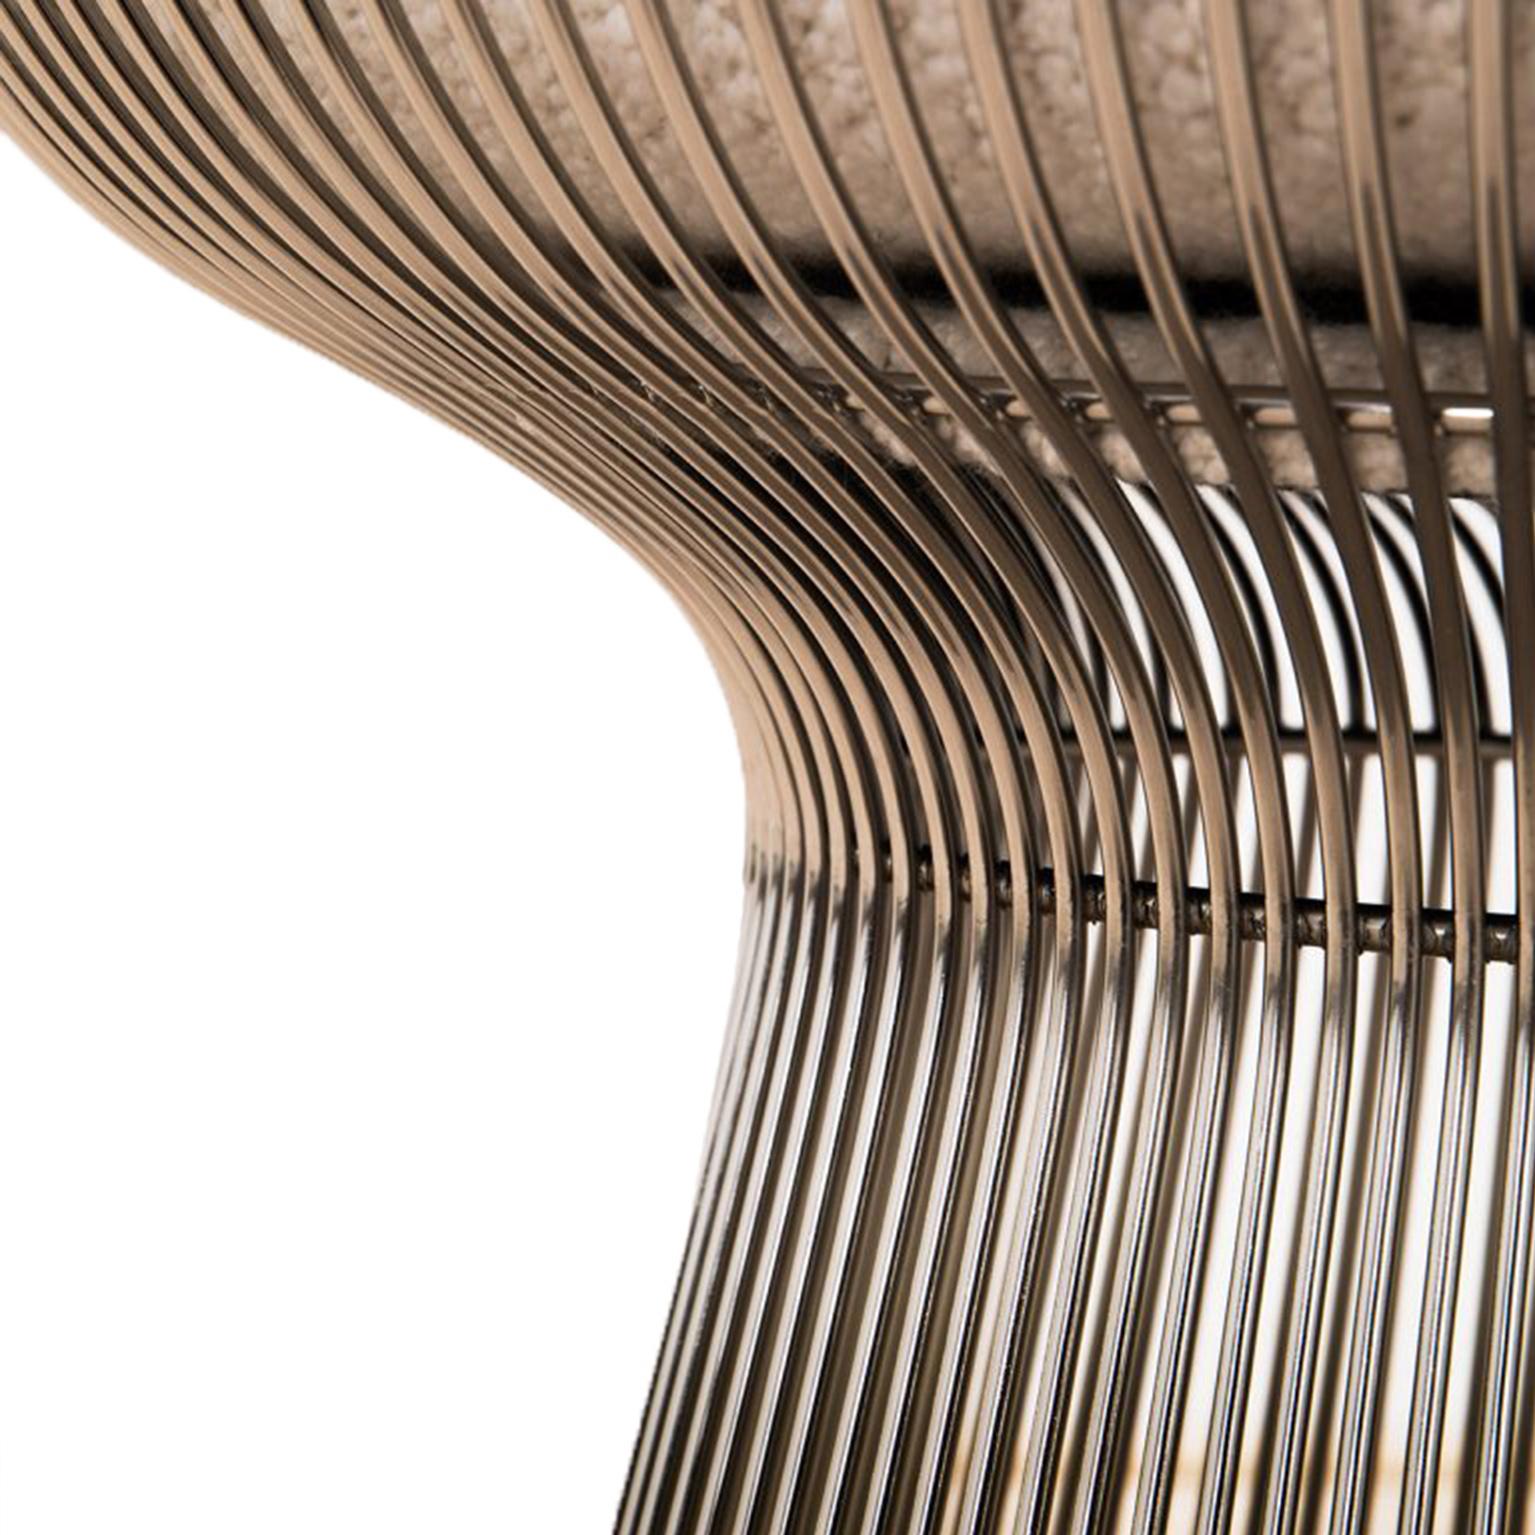 Paire de chaises conçues par Warren Platner et éditées par Knoll. Structure de forme sculpturale en fil d'acier. Rembourré en tissu bouclé. USA 60s.

Dimensions : L 93 x P 79 x H 79 cm